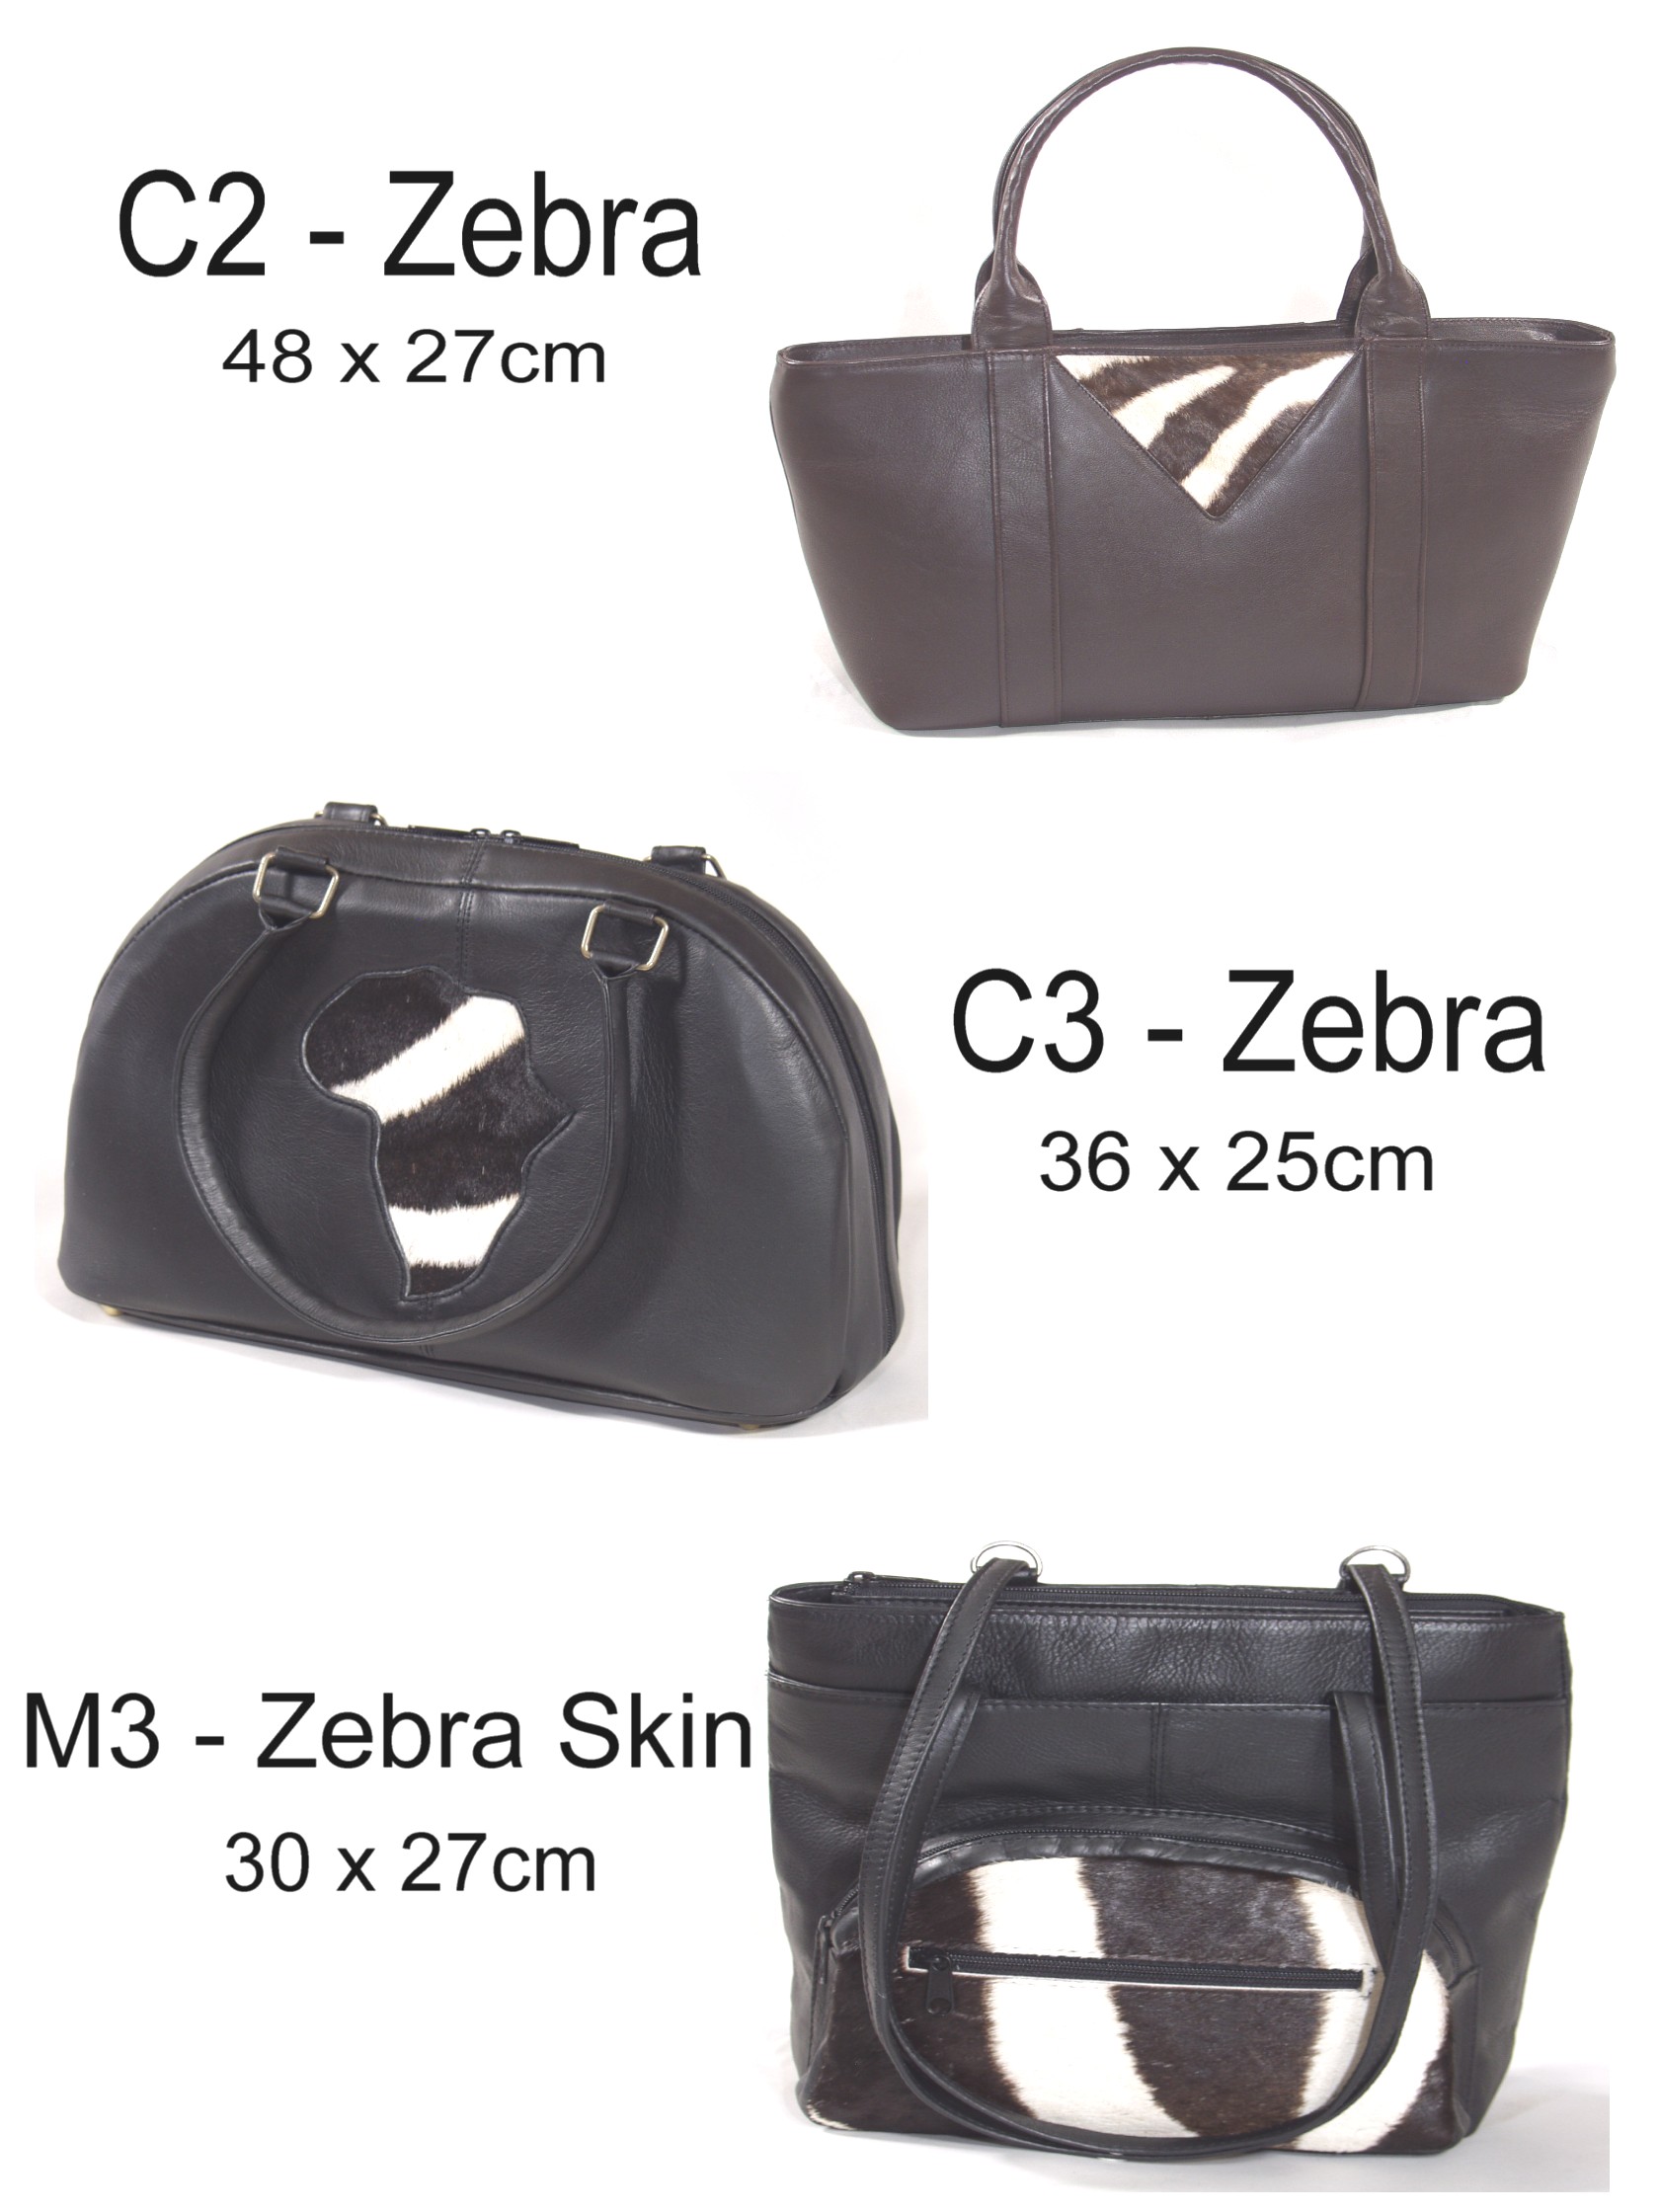 Zebra/leather handbags